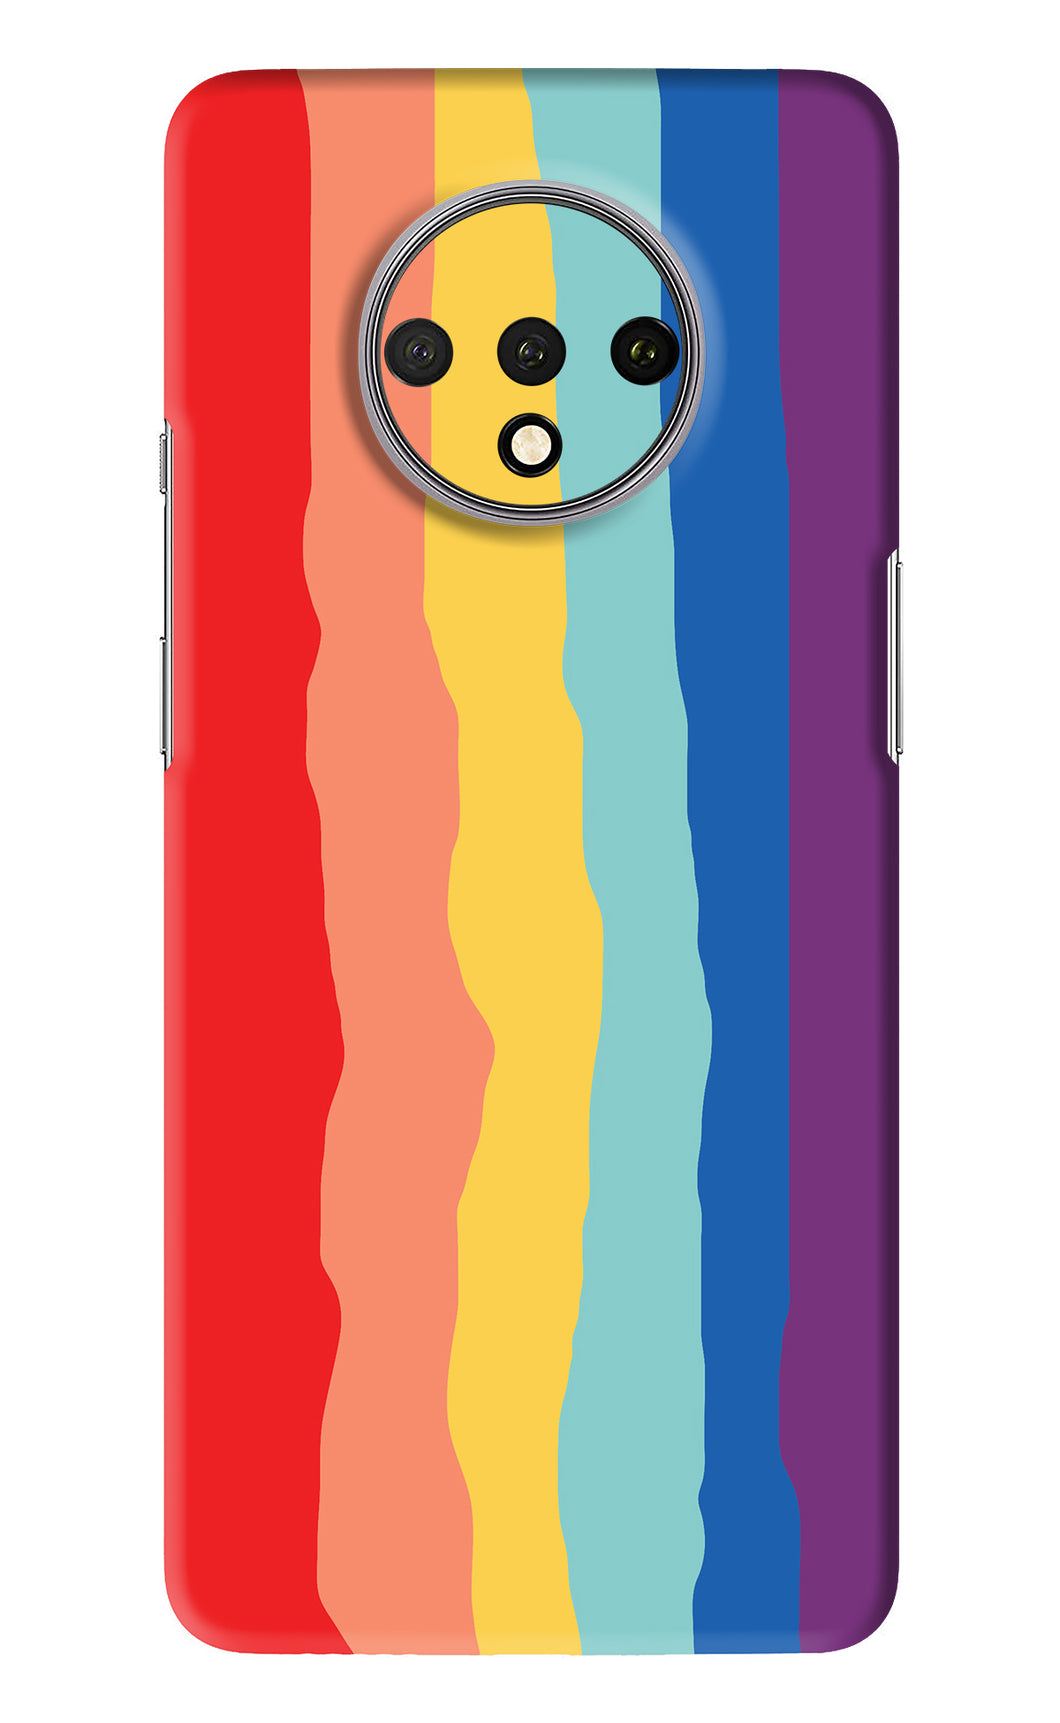 Rainbow OnePlus 7T Back Skin Wrap